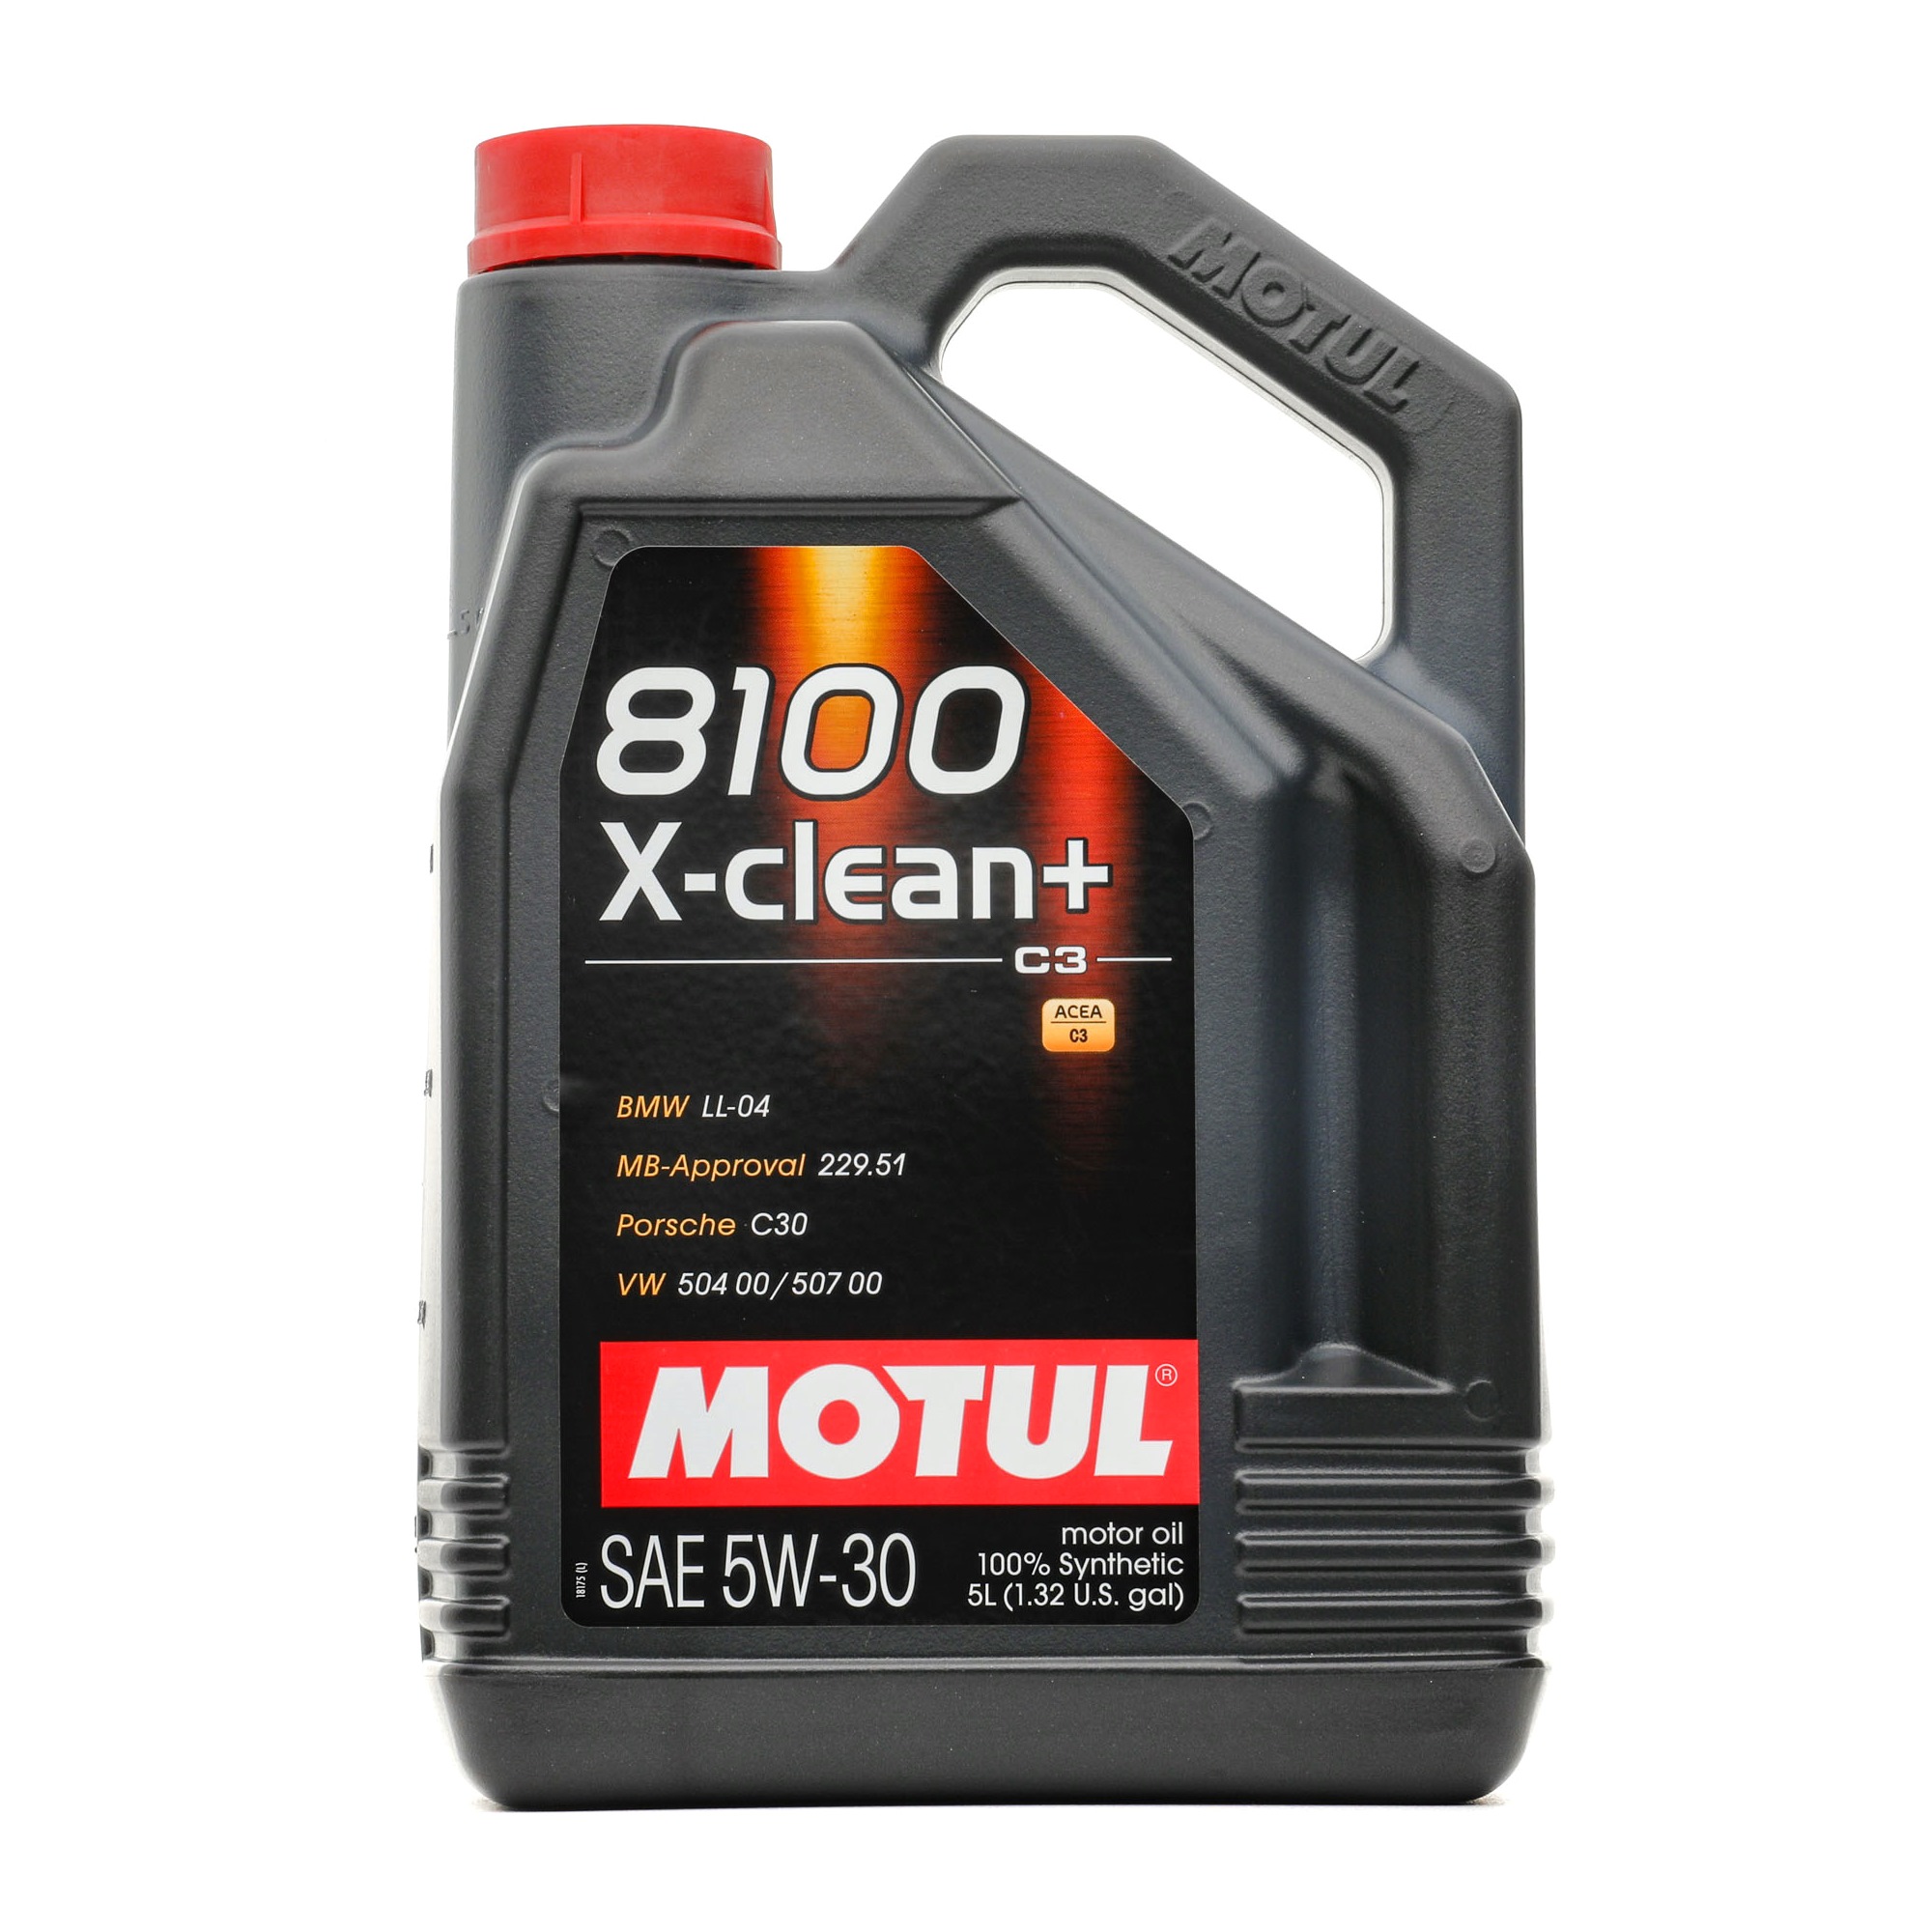 Kaufen Motoröl MOTUL 109220 8100, X-CLEAN+ 5W-30, 5l